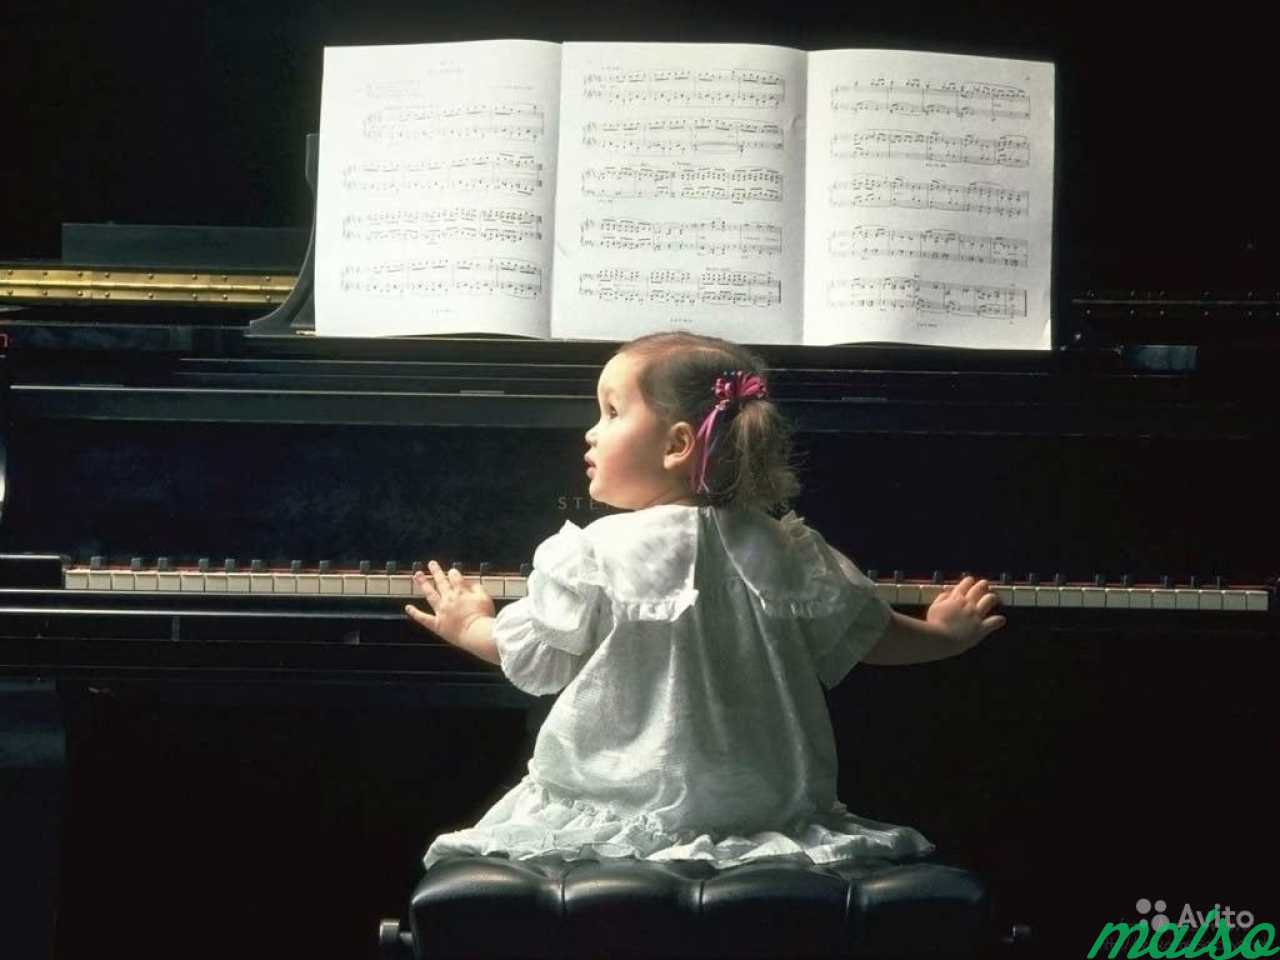 Войдем в мир музыки. Музыкальные инструменты для детей. Фортепиано для детей. Ребенок за роялем. Музыкальная классика для детей.